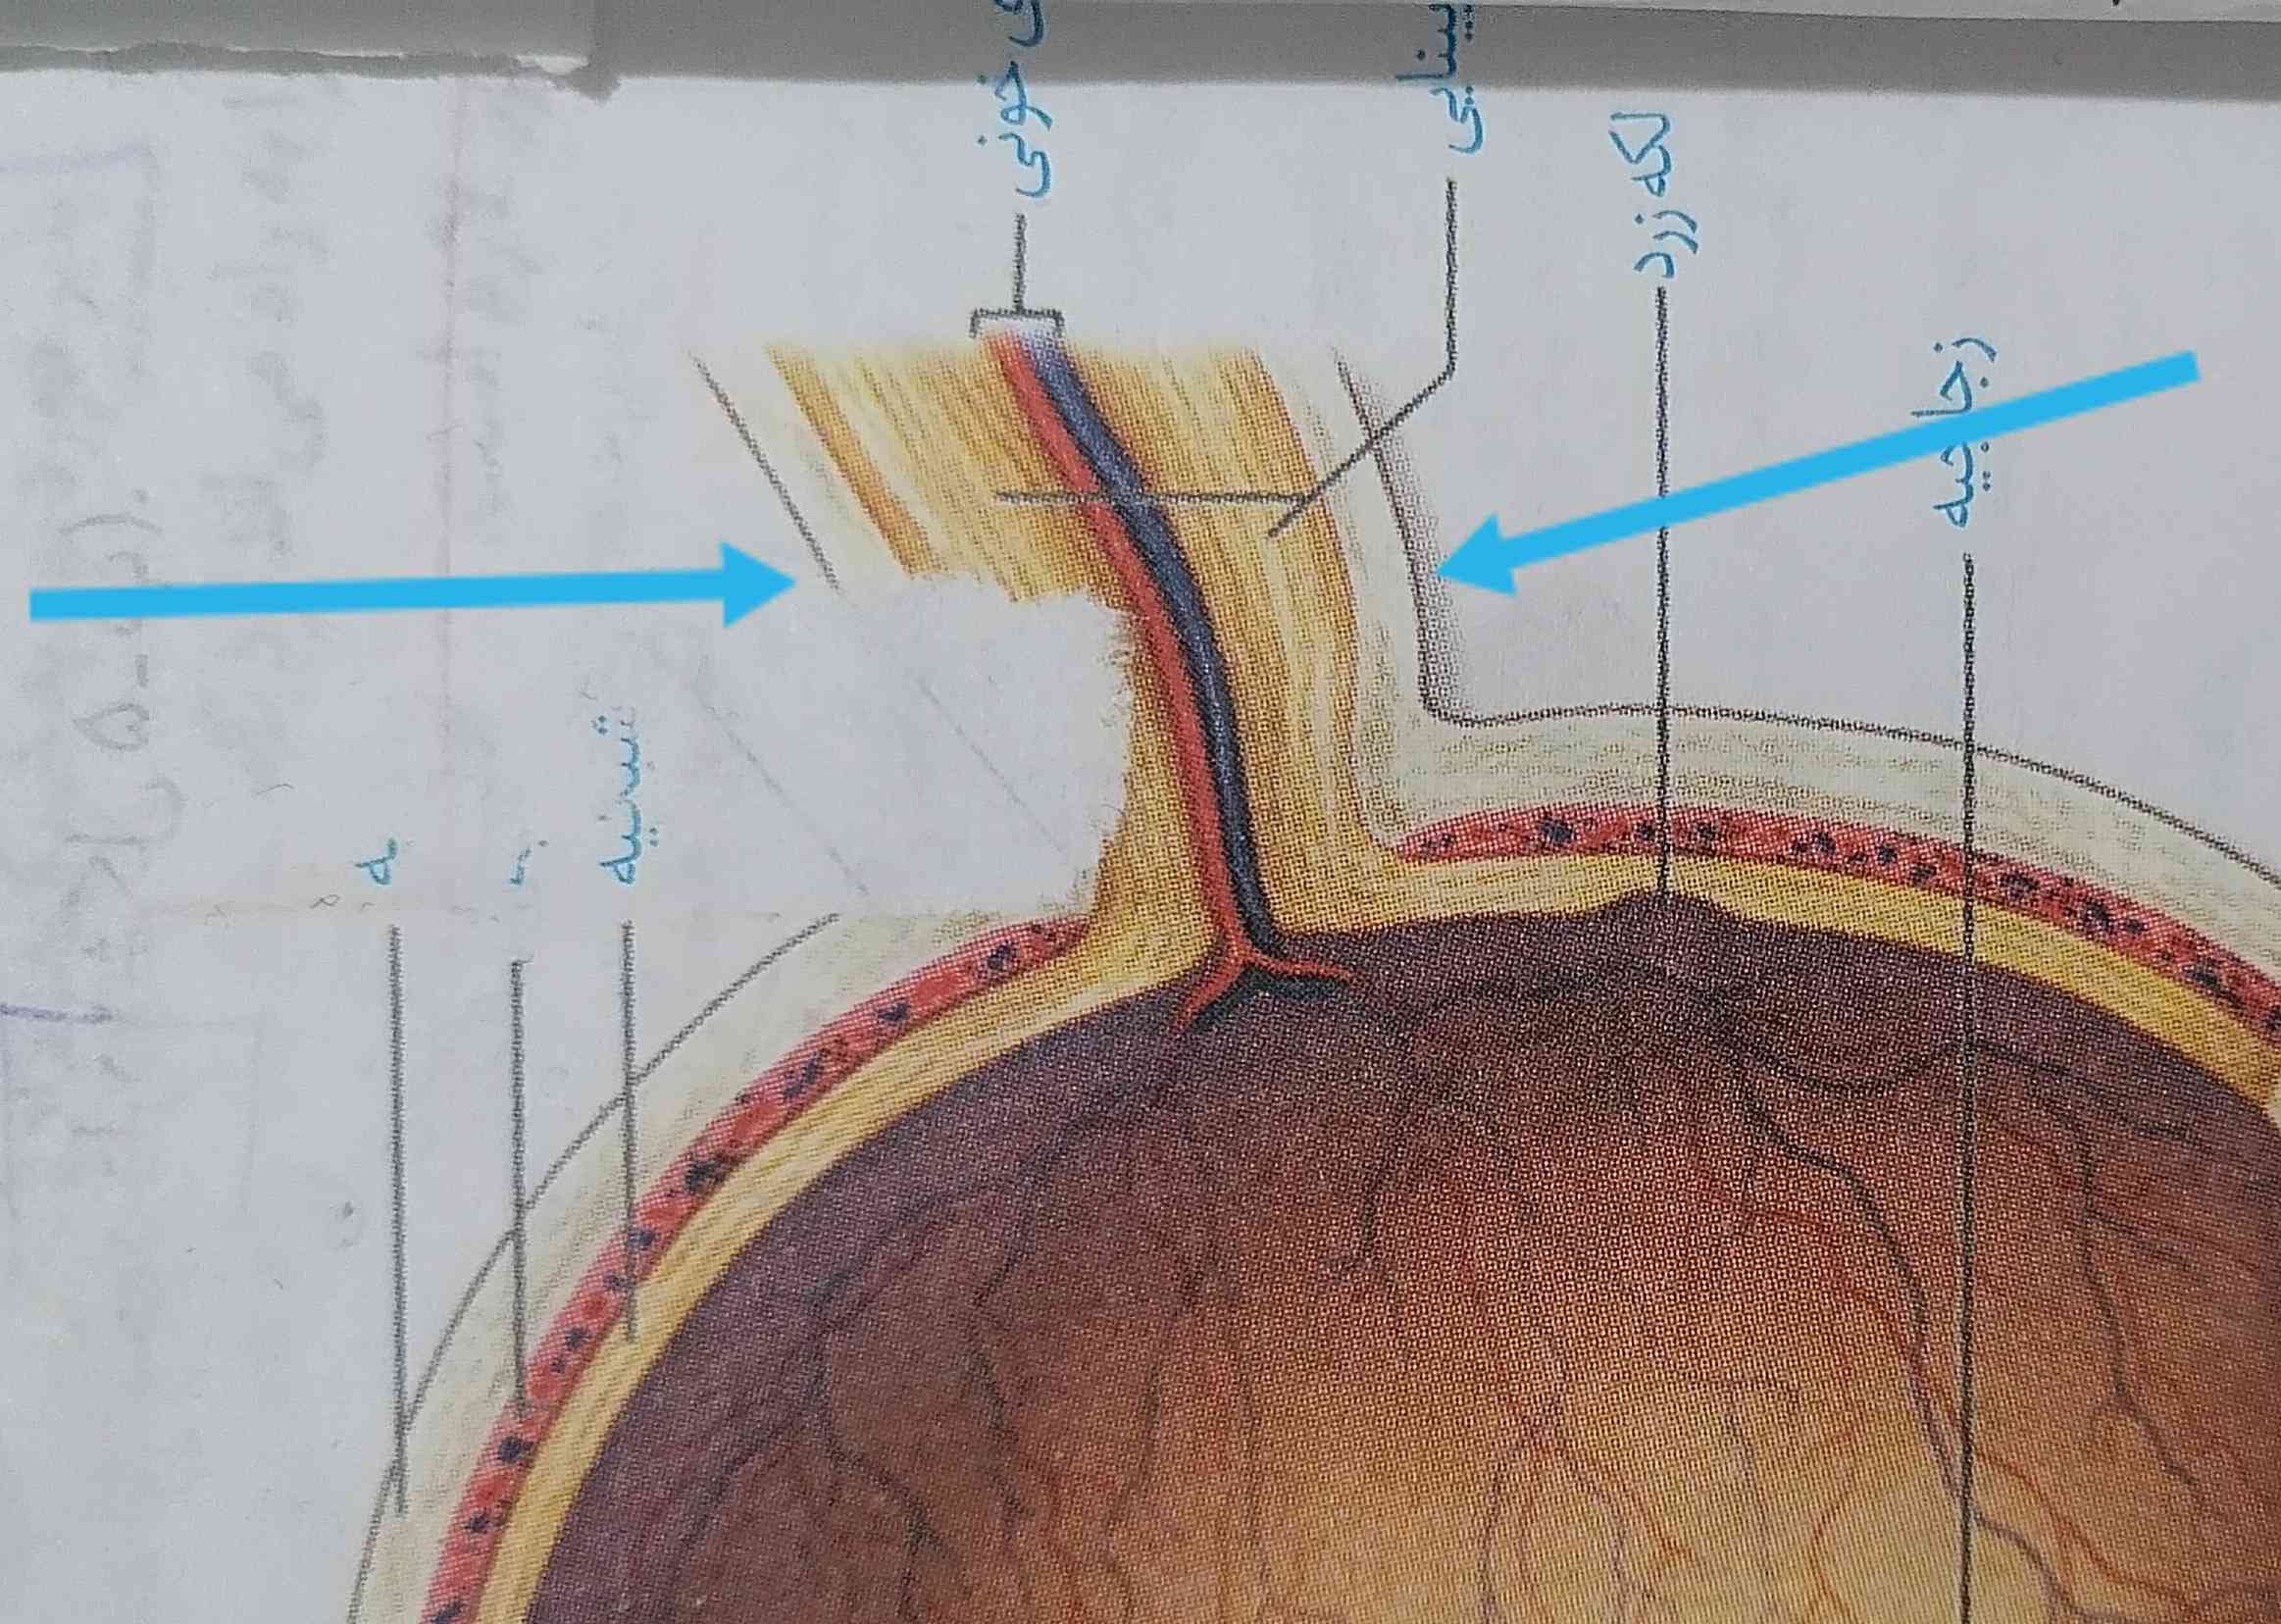 با توجه به شکل کتاب صلبیه دور عصب بینایی رو احاطه کرده
پس میتونیم بگیم ک صلبیه هم بخش پشتی چشم و هم دور عصب بینایی رو احاطه میکنه؟ 